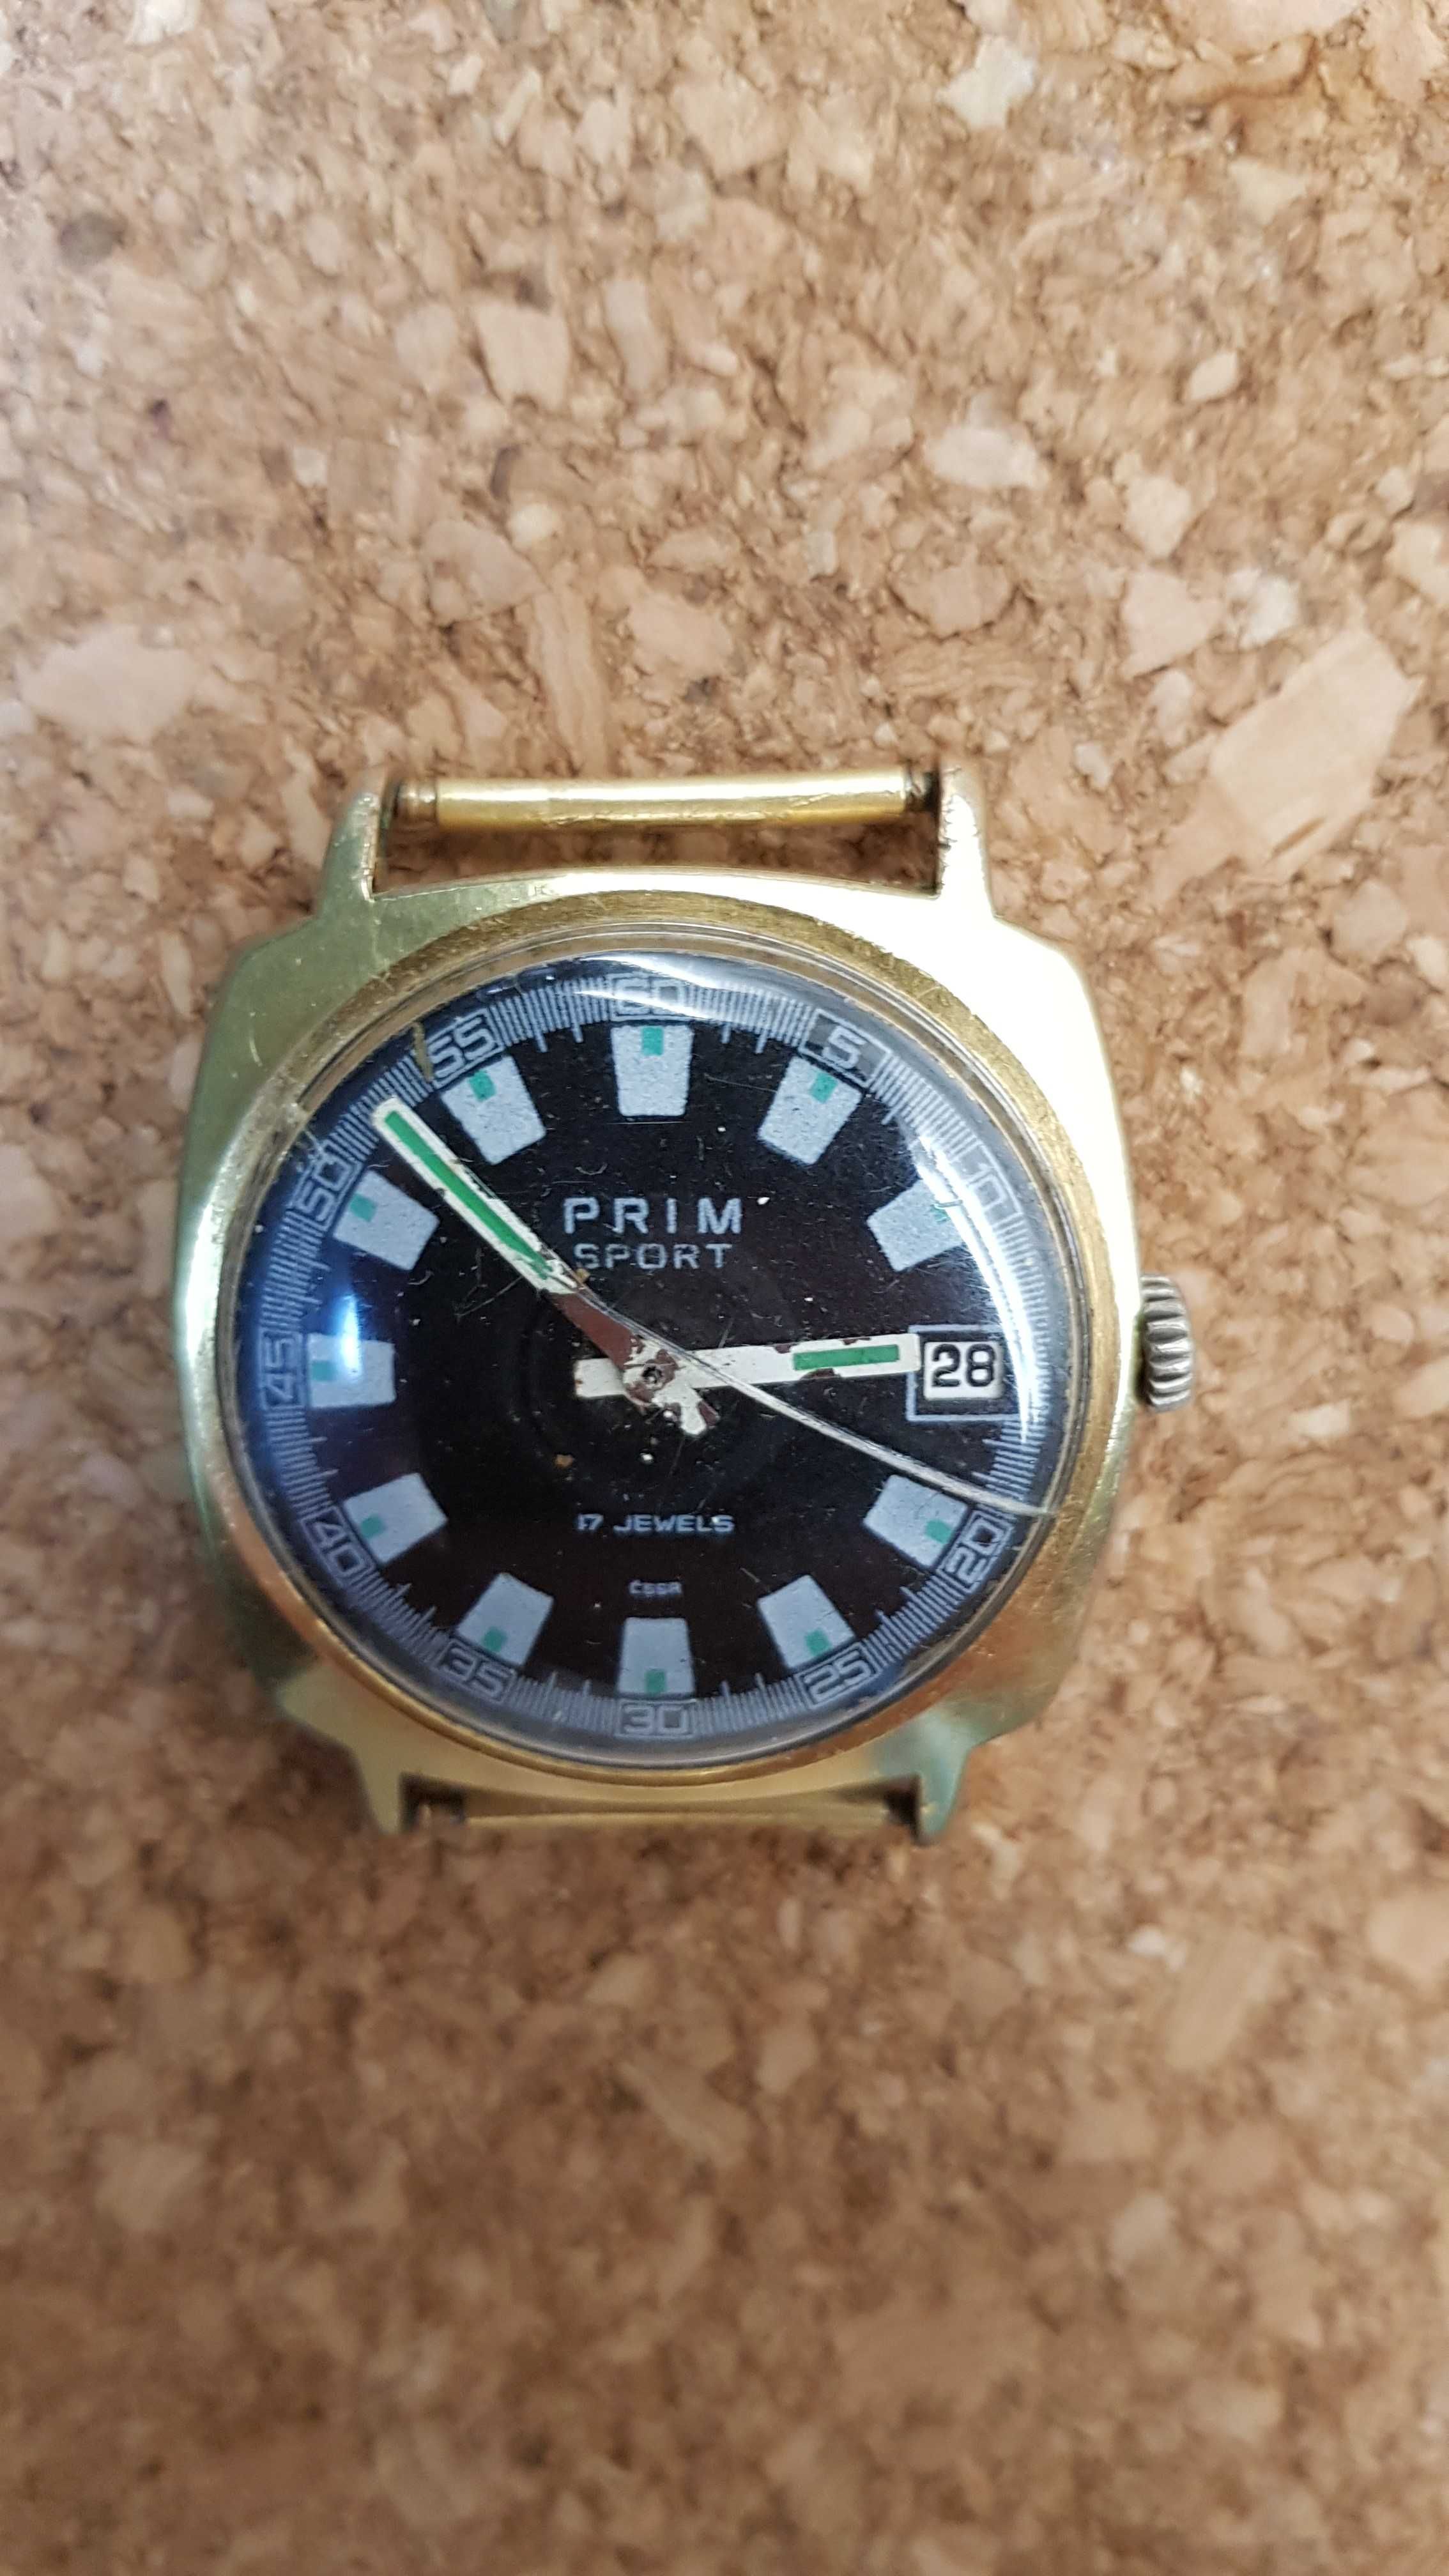 Zegarek Prim - Czechosłowacja